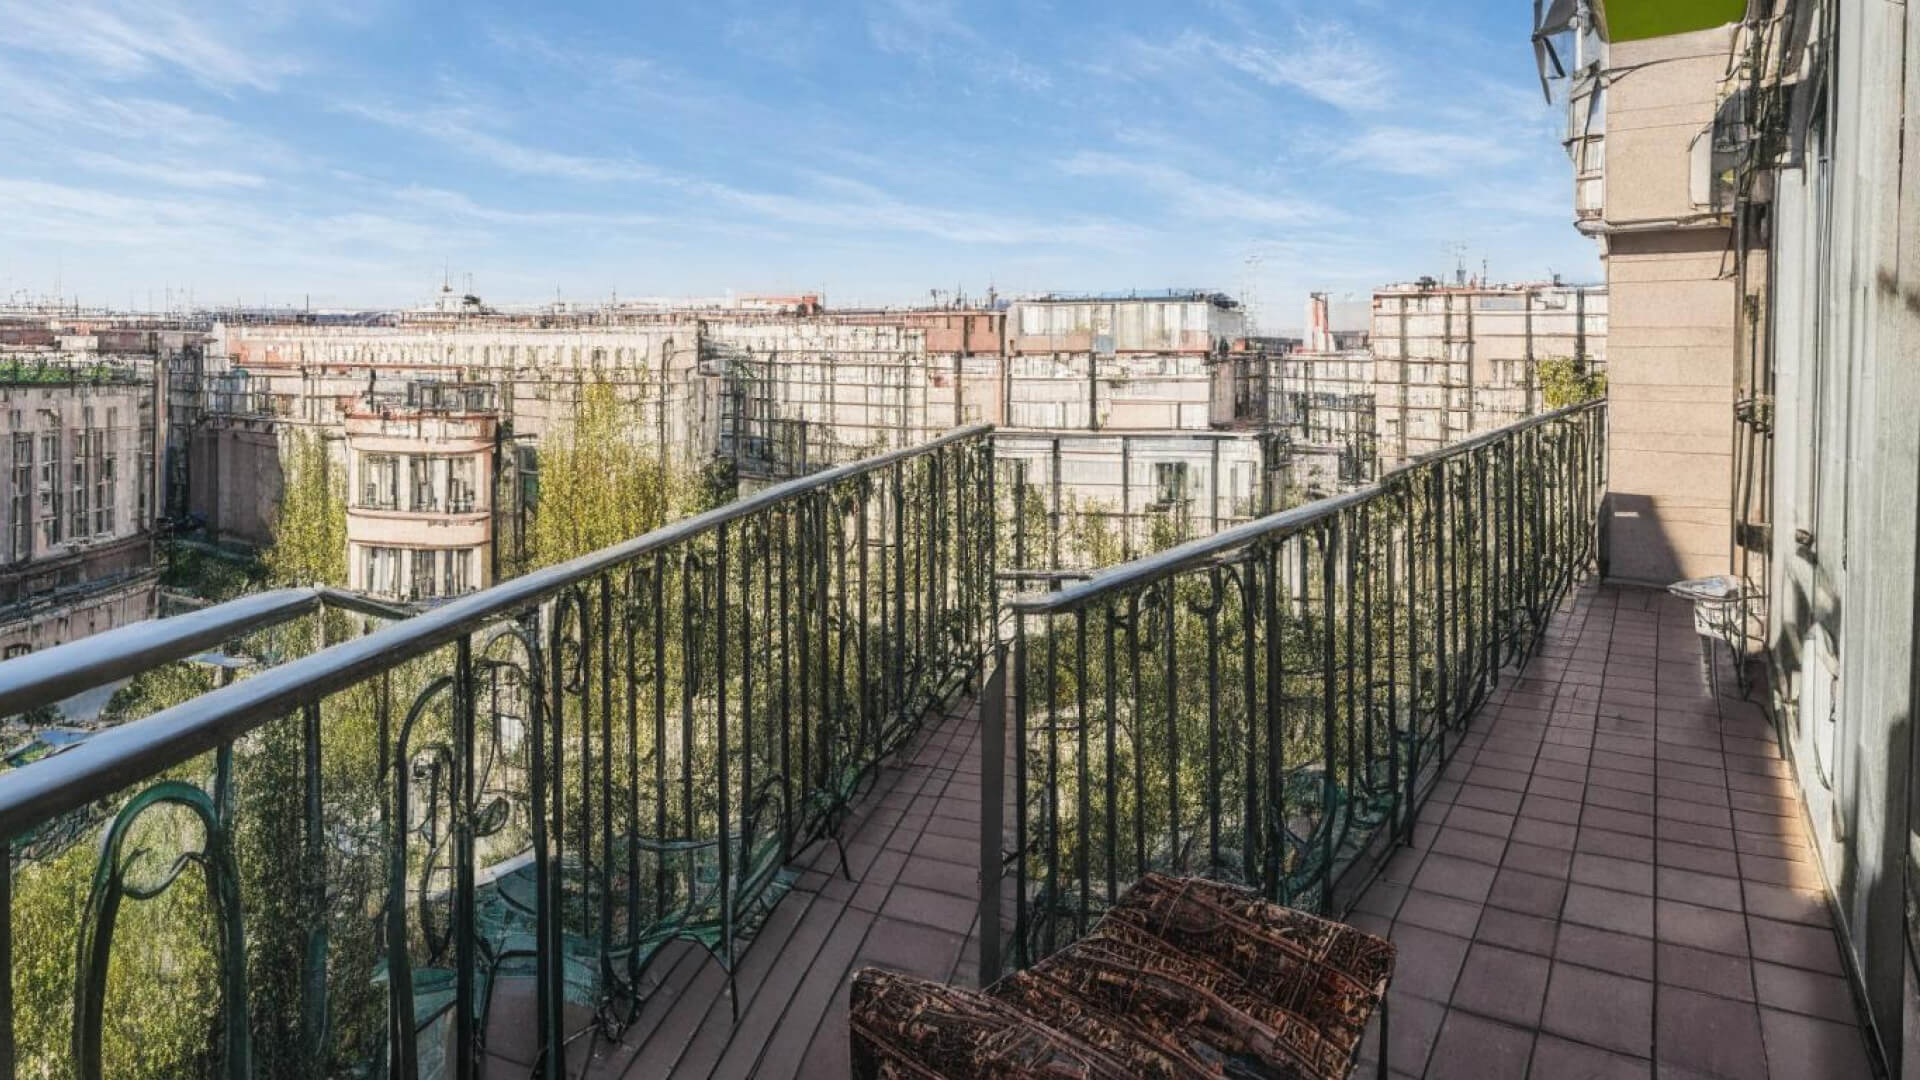 Еще один запрос: «Москва, улица Краснопрудная, квартира, балкон». Балкон оказался большущим и многоуровневым, уходящим куда-то в неизвестность.